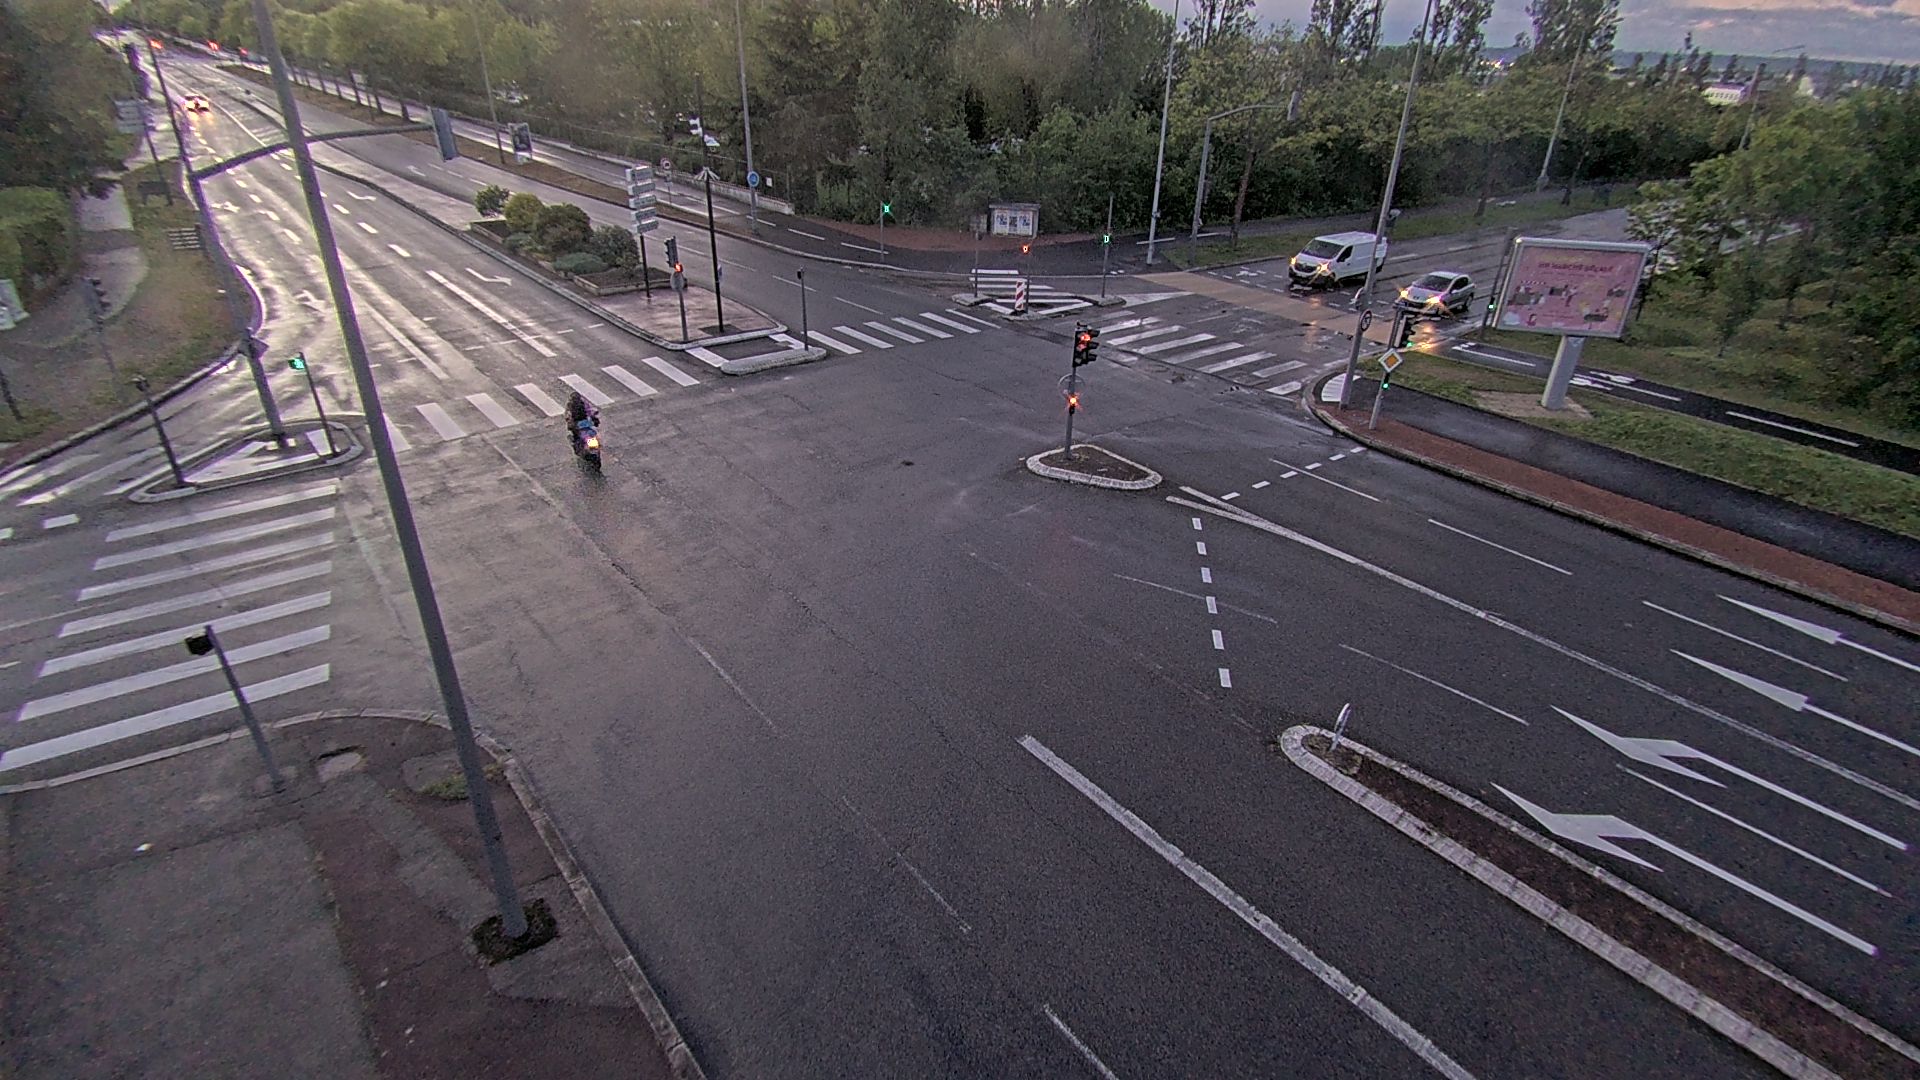 Webcam proche de l'A43 à Bron à la jonction entre le Boulevard de l'Université (D112) et l'avenue Général de Gaulle (D506). Vue orientée vers Eurexpo